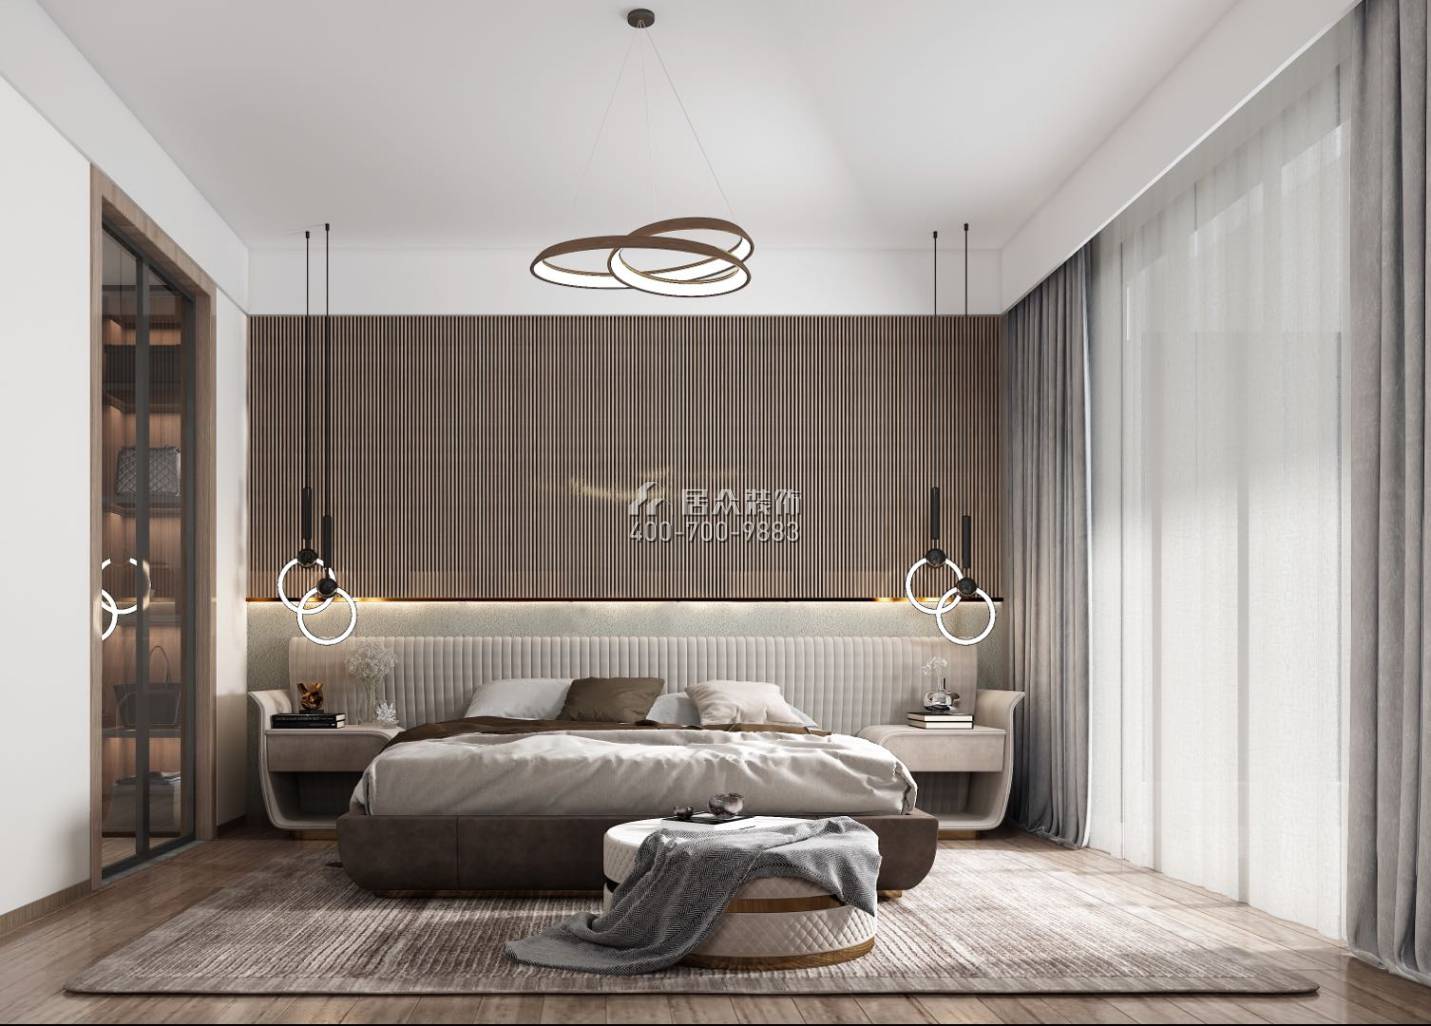 翠湖香山别苑238平方米现代简约风格复式户型卧室装修效果图